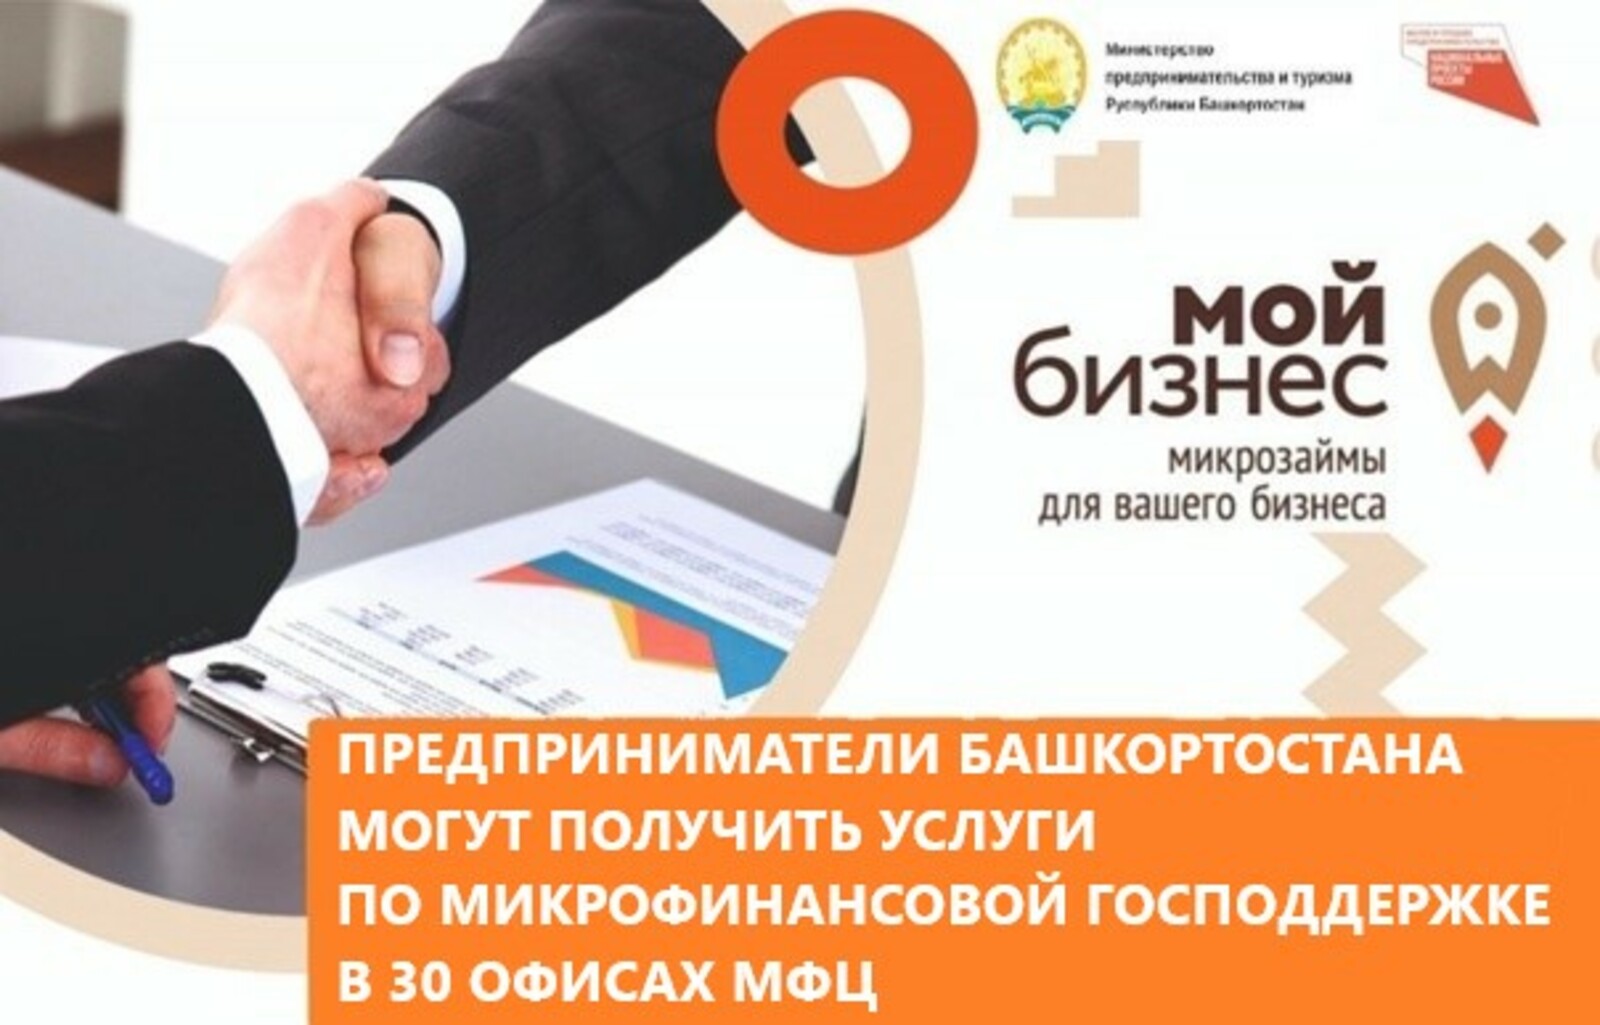 Предприниматели Башкортостана могут получить услуги по микрофинансовой господдержке в 30 офисах МФЦ